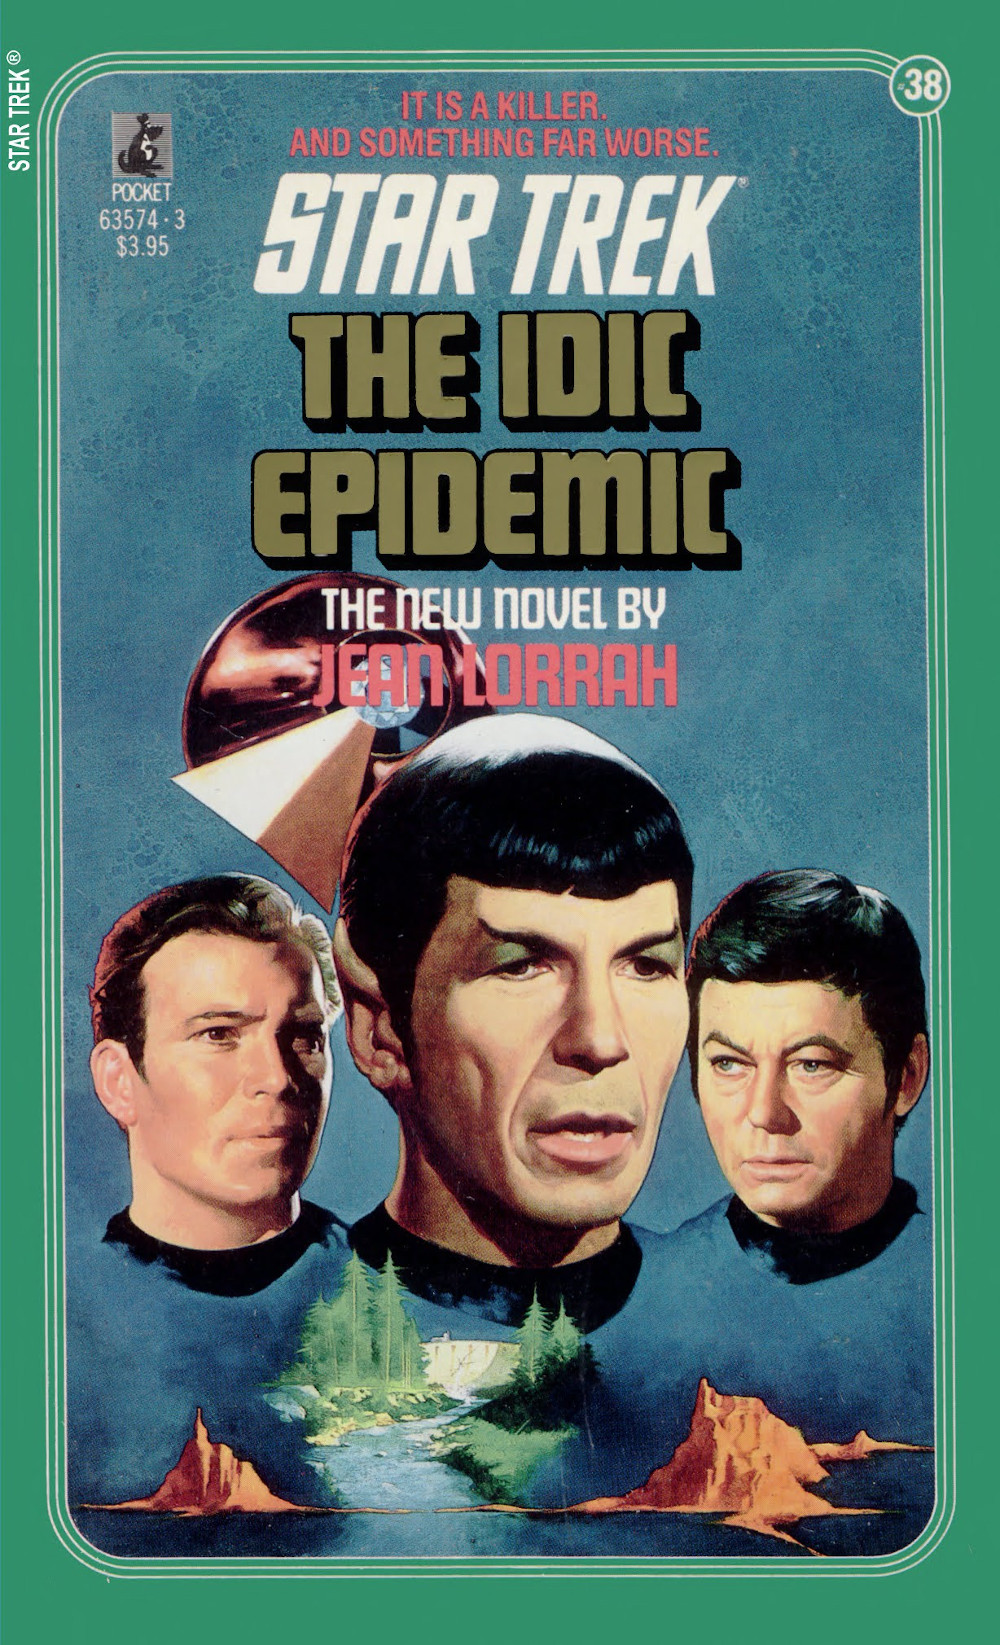 The IDIC Epidemic (Feb 1988)